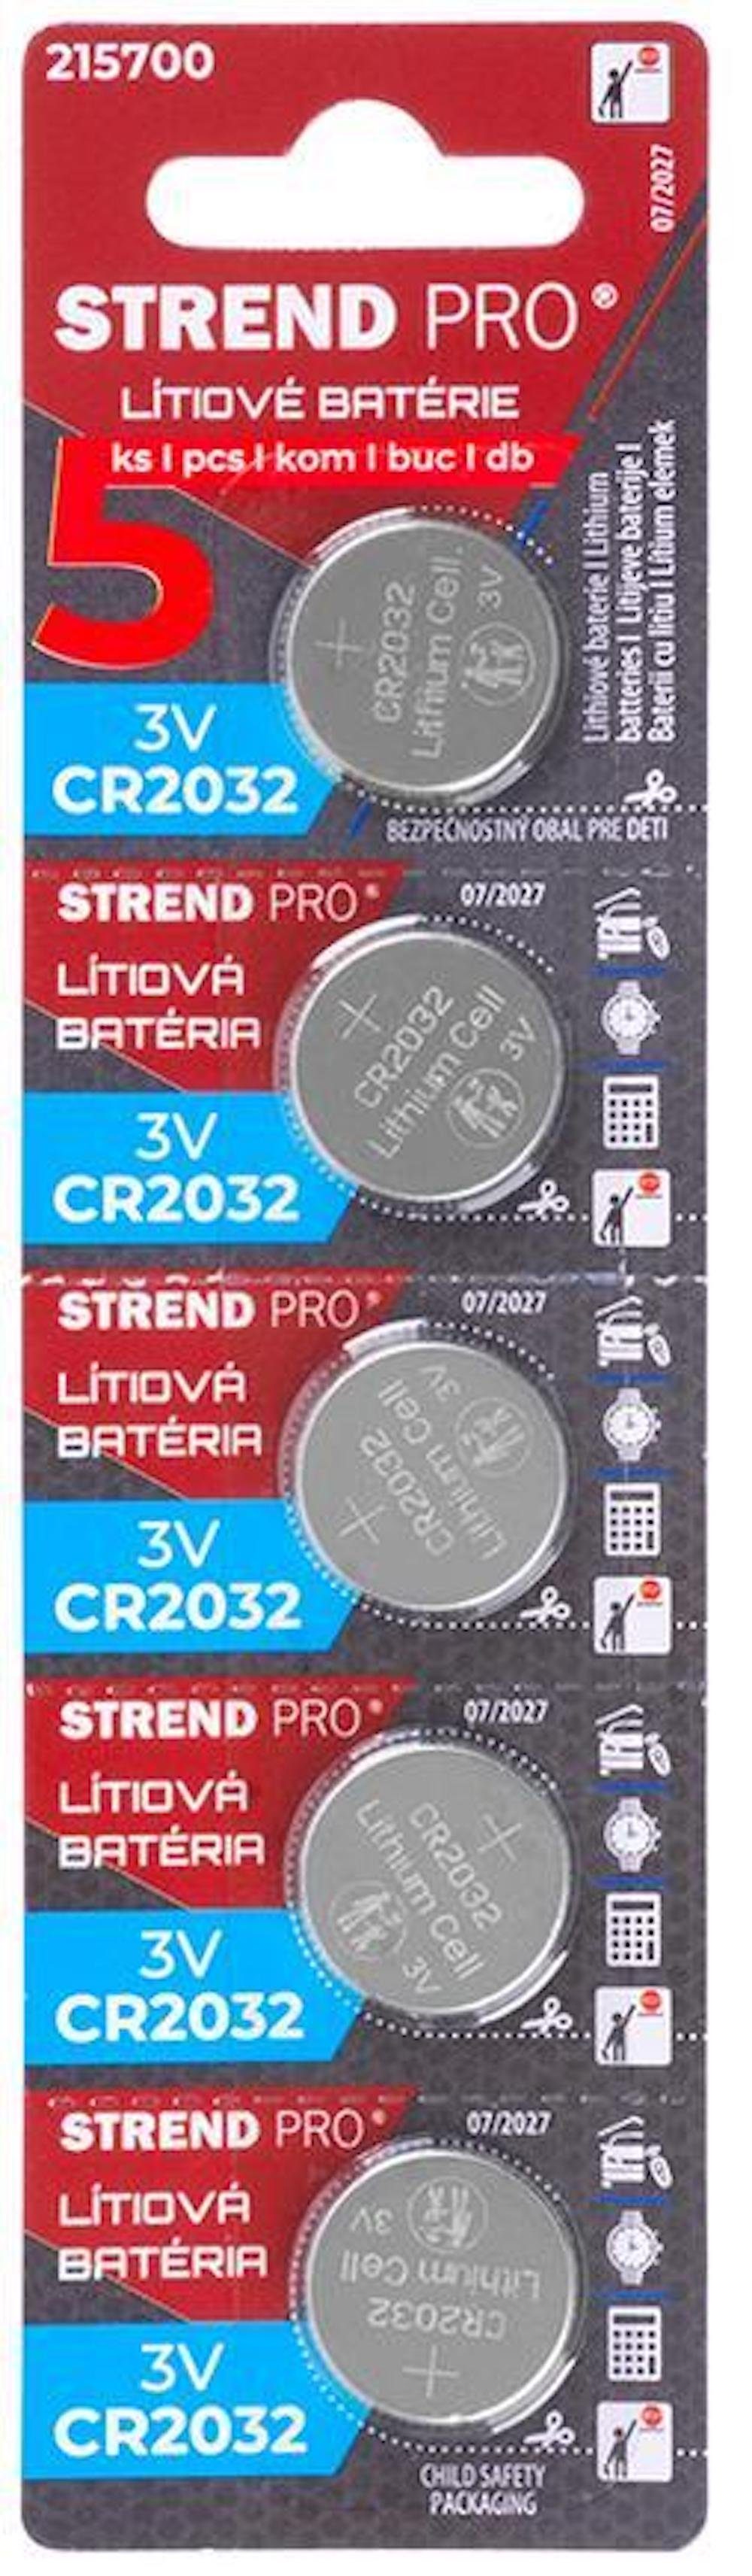 CR2032 PROREGAL® Elektrowerkzeug-Set Stück, Li-Mno2, 5 Batterien,